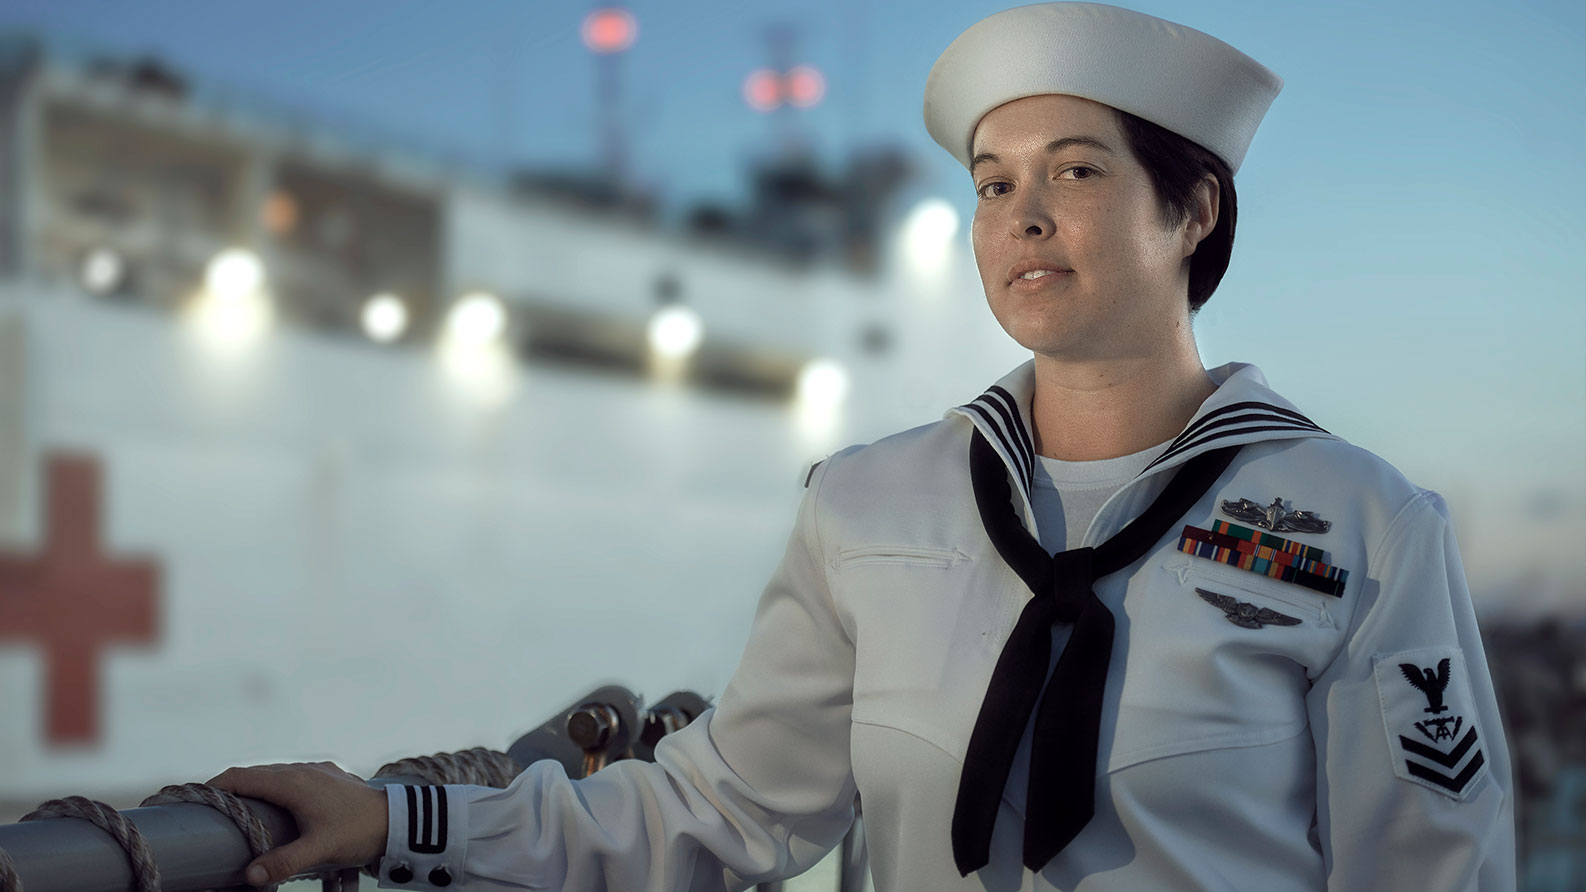 Natalie Tardif, U.S. Navy fire controlman, in full Navy uniform attire